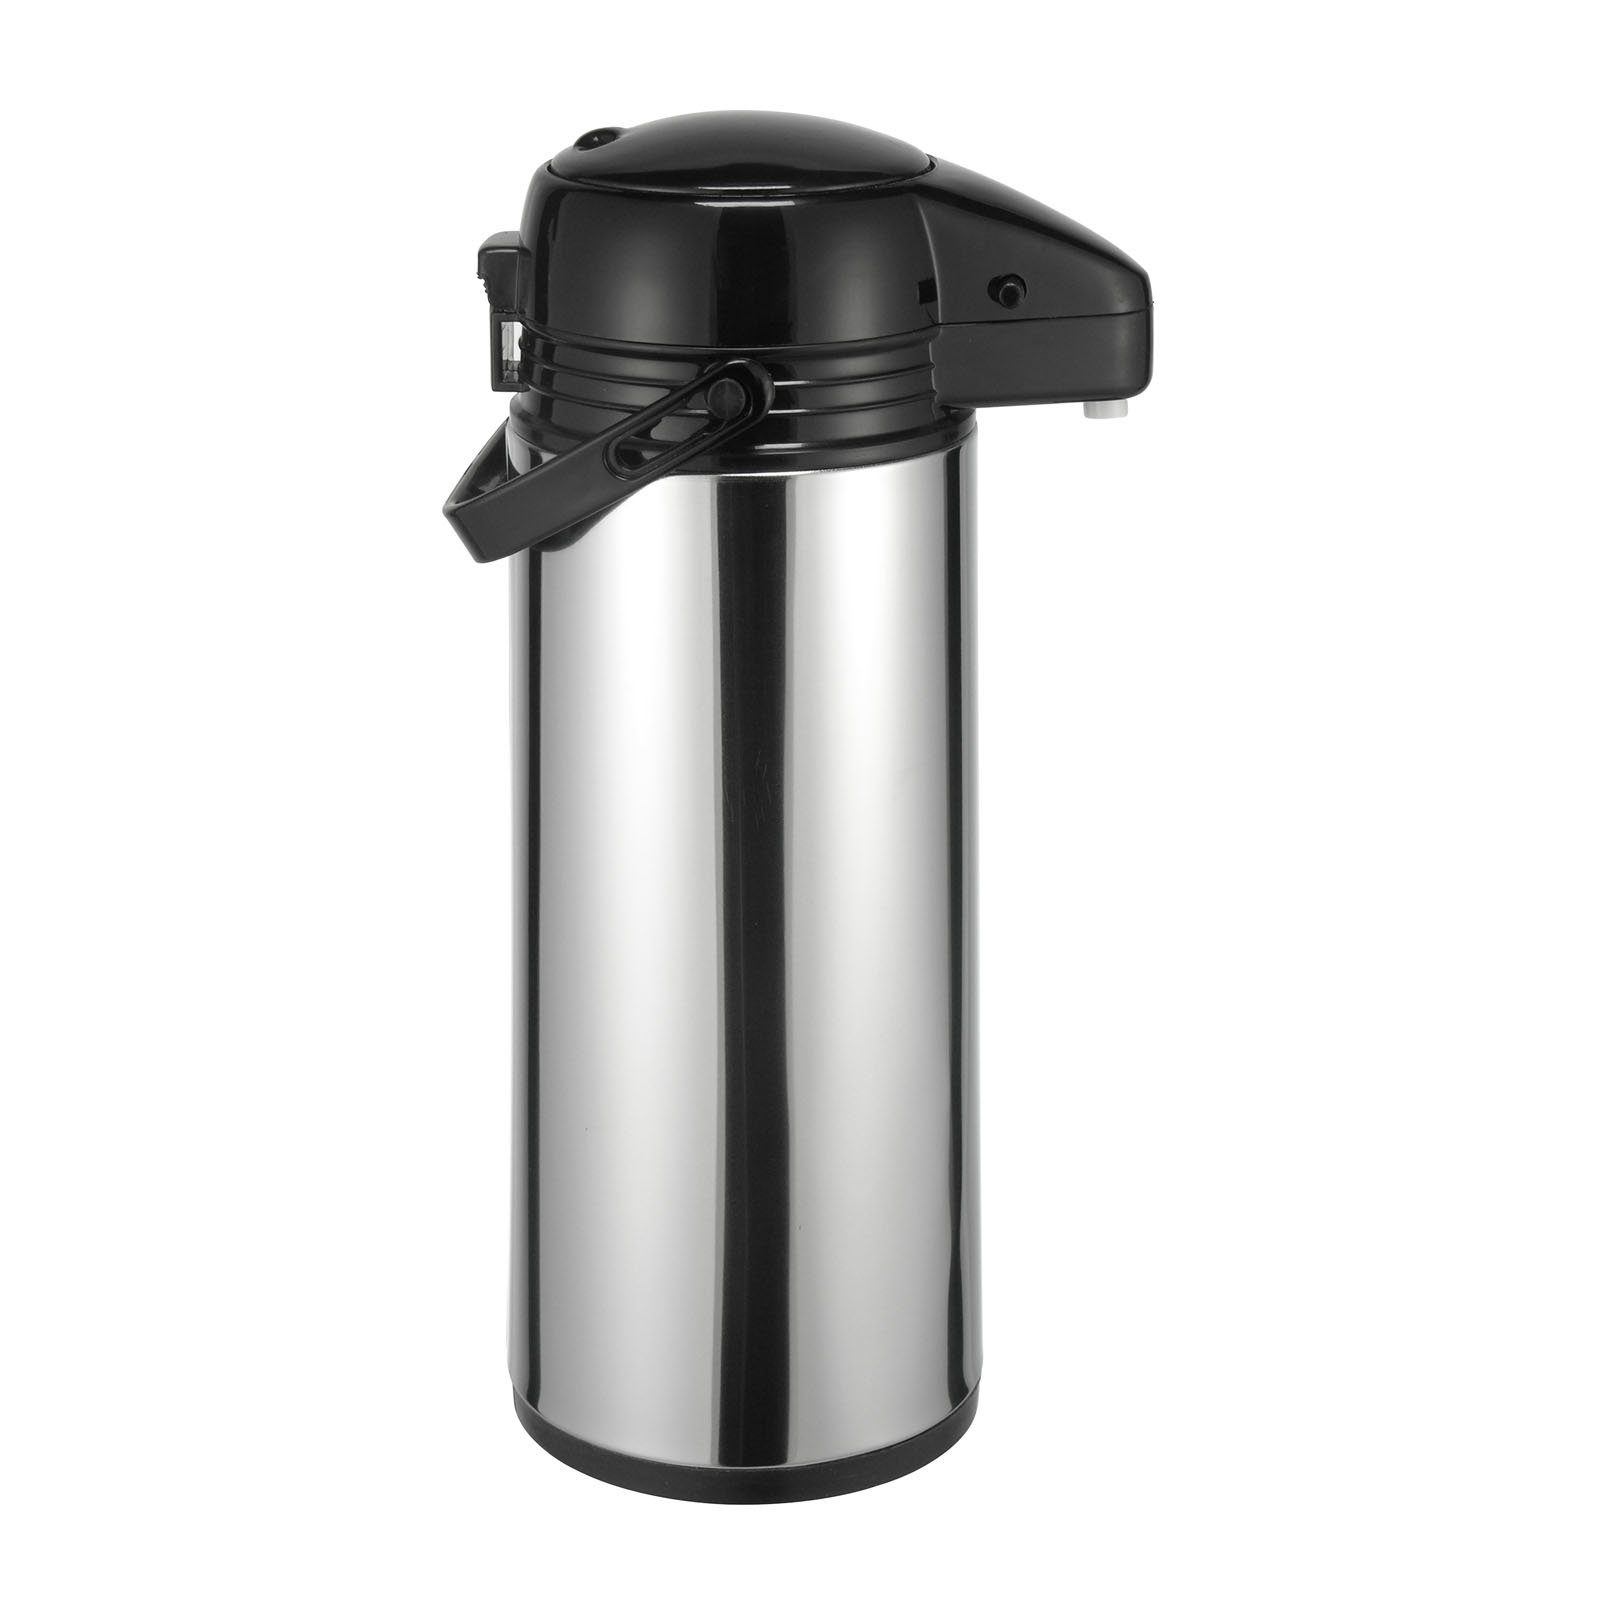 HAC24 Pump-Isolierkanne Thermoskanne Kaffeekanne Isolierkanne Teekanne Thermo Kaffee Tee Kanne Airpot Pumpkanne, 1,9 l, Edelstahl, Mit Pumpmechanismus & Tragegriff | Isolierkannen